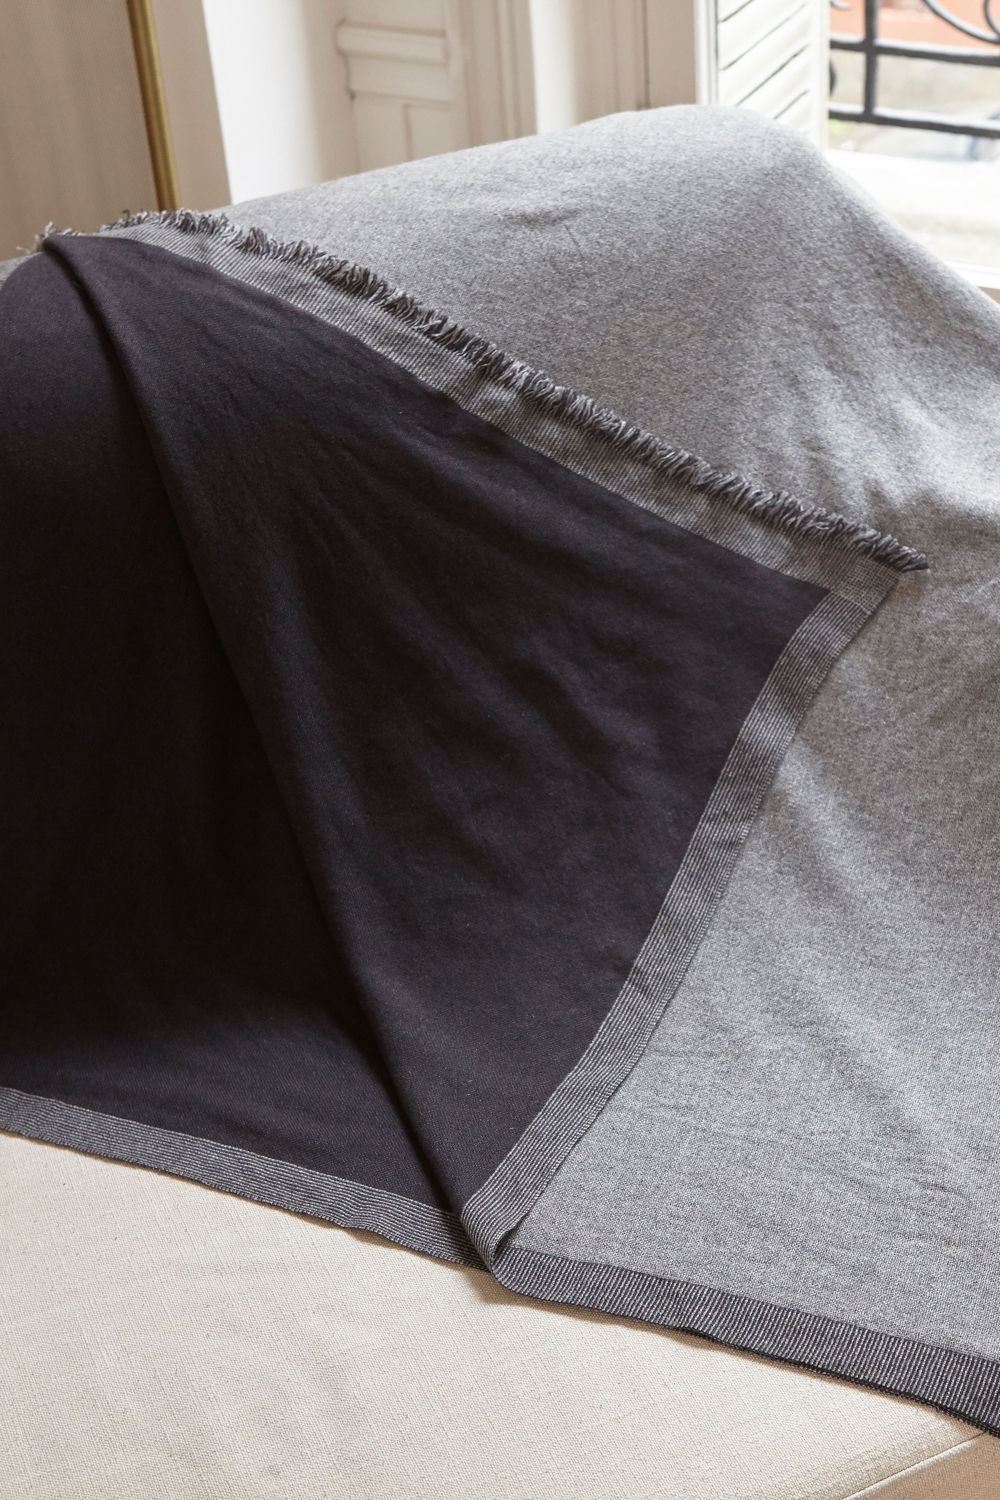 Cachemire accessoires couvertures plaids fougere 130 x 190 gris chine anthracite 130 x 190 cm